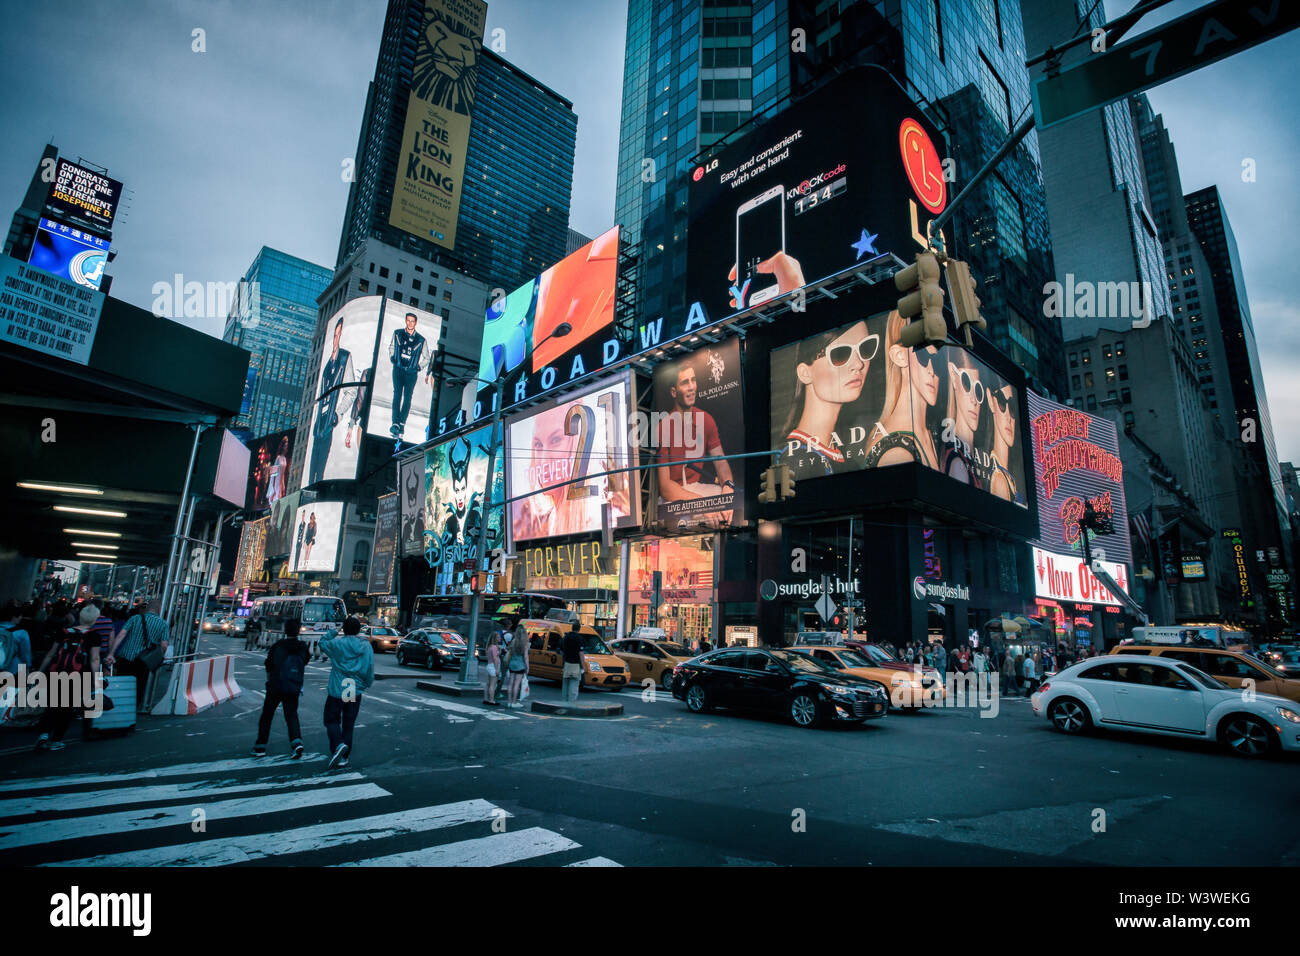 La città di New York, Stati Uniti d'America - 20 Maggio 2014: Times Square durante una serata tranquilla. Le persone sono a piedi sui marciapiedi, i taxi sono sulla strada e la pubblicità bi Foto Stock